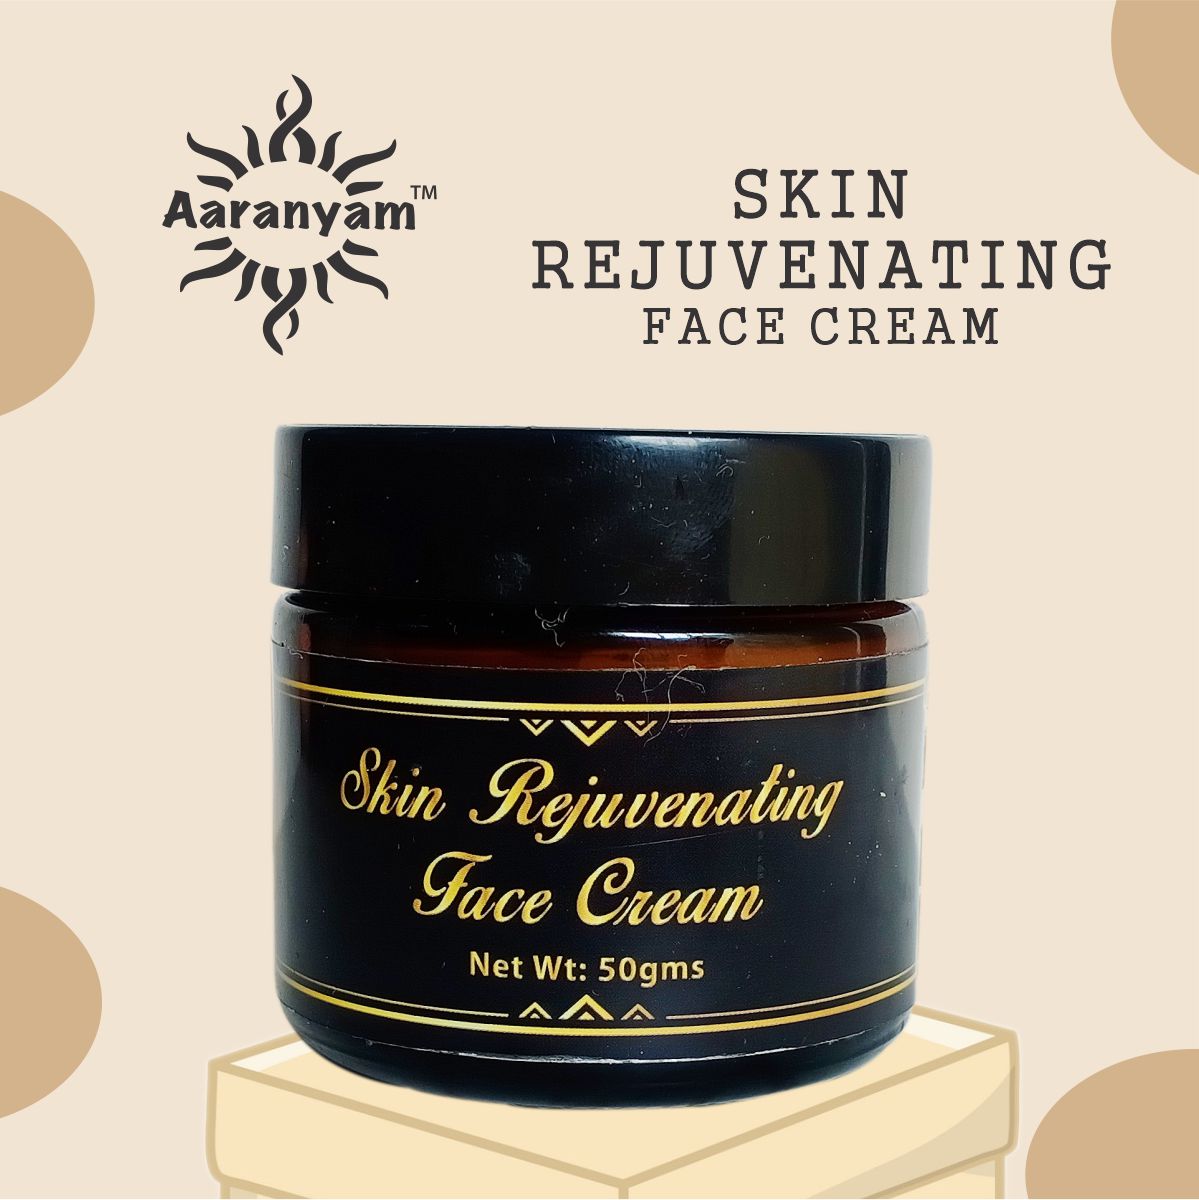 Aaranyam Skin Rejuvenating Face Cream for men & women- All age groups